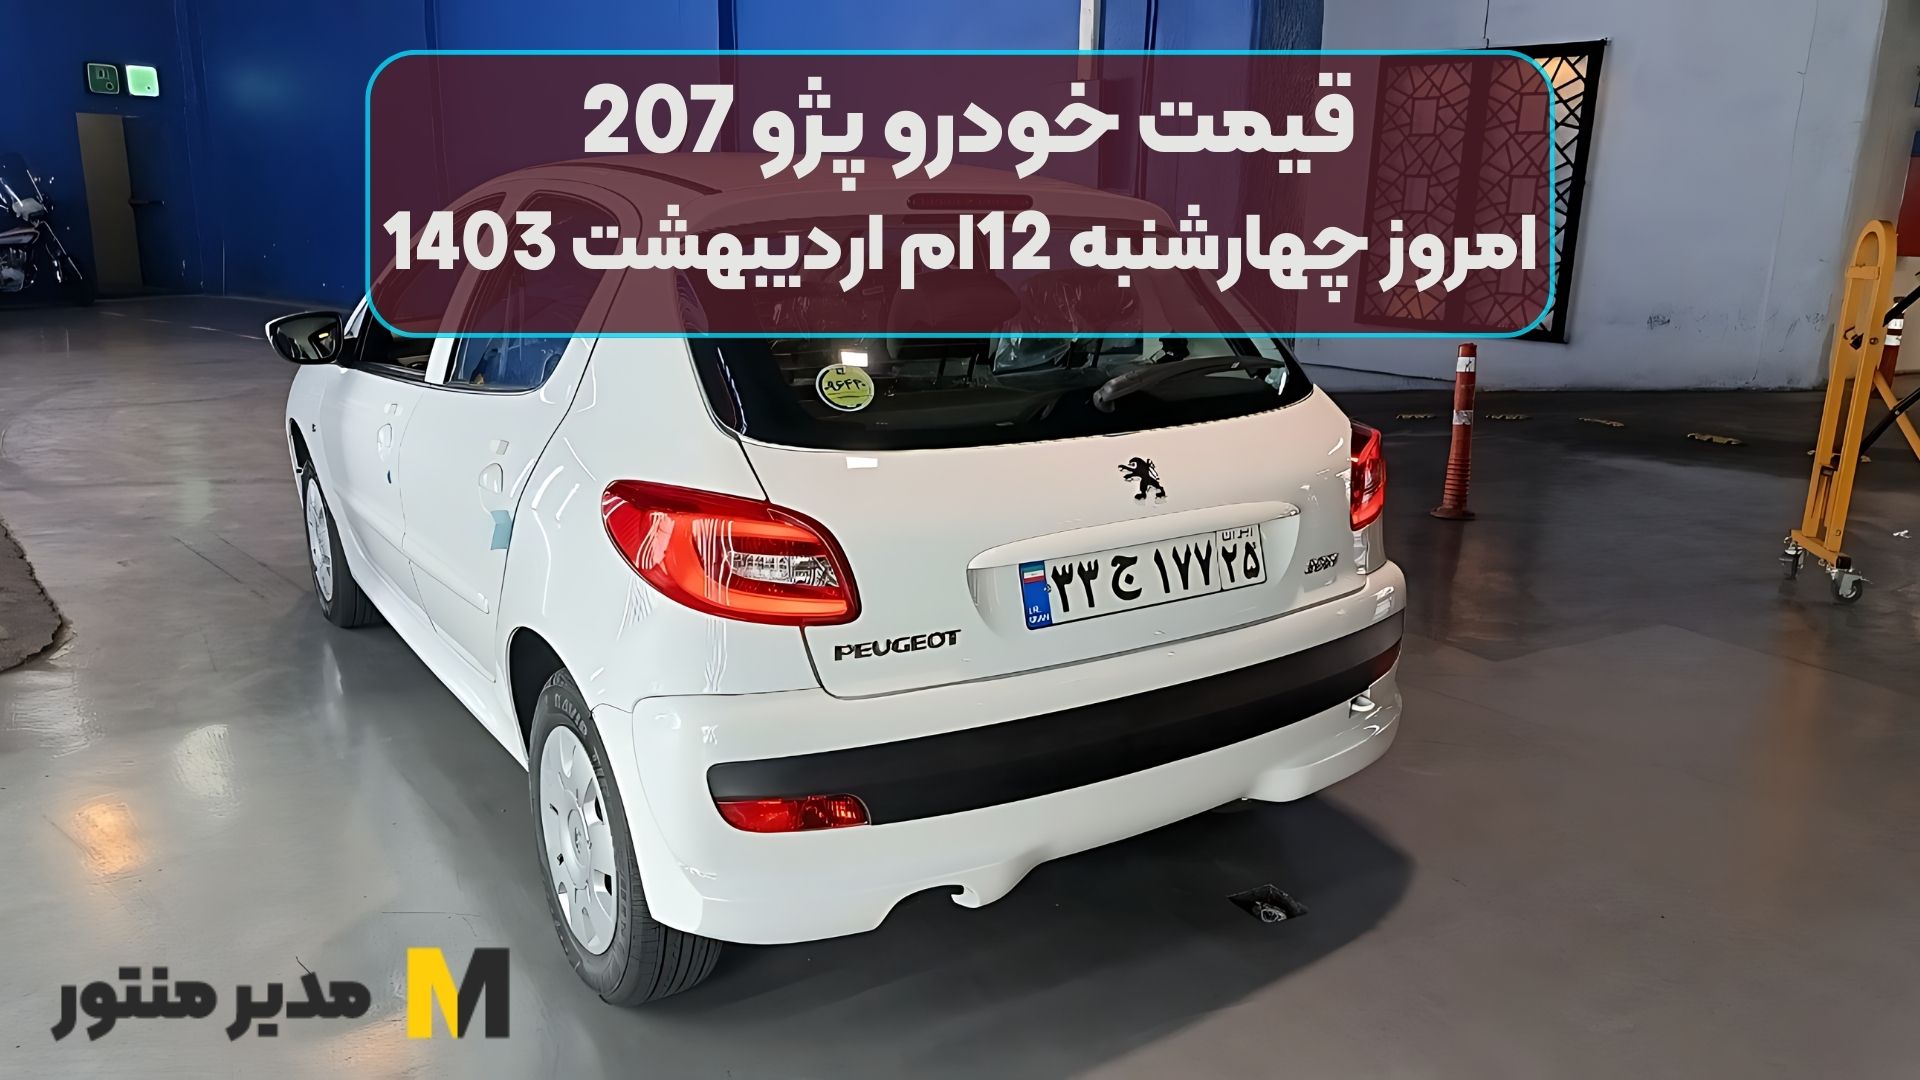 قیمت خودرو پژو 207 امروز چهارشنبه 12ام اردیبهشت 1403